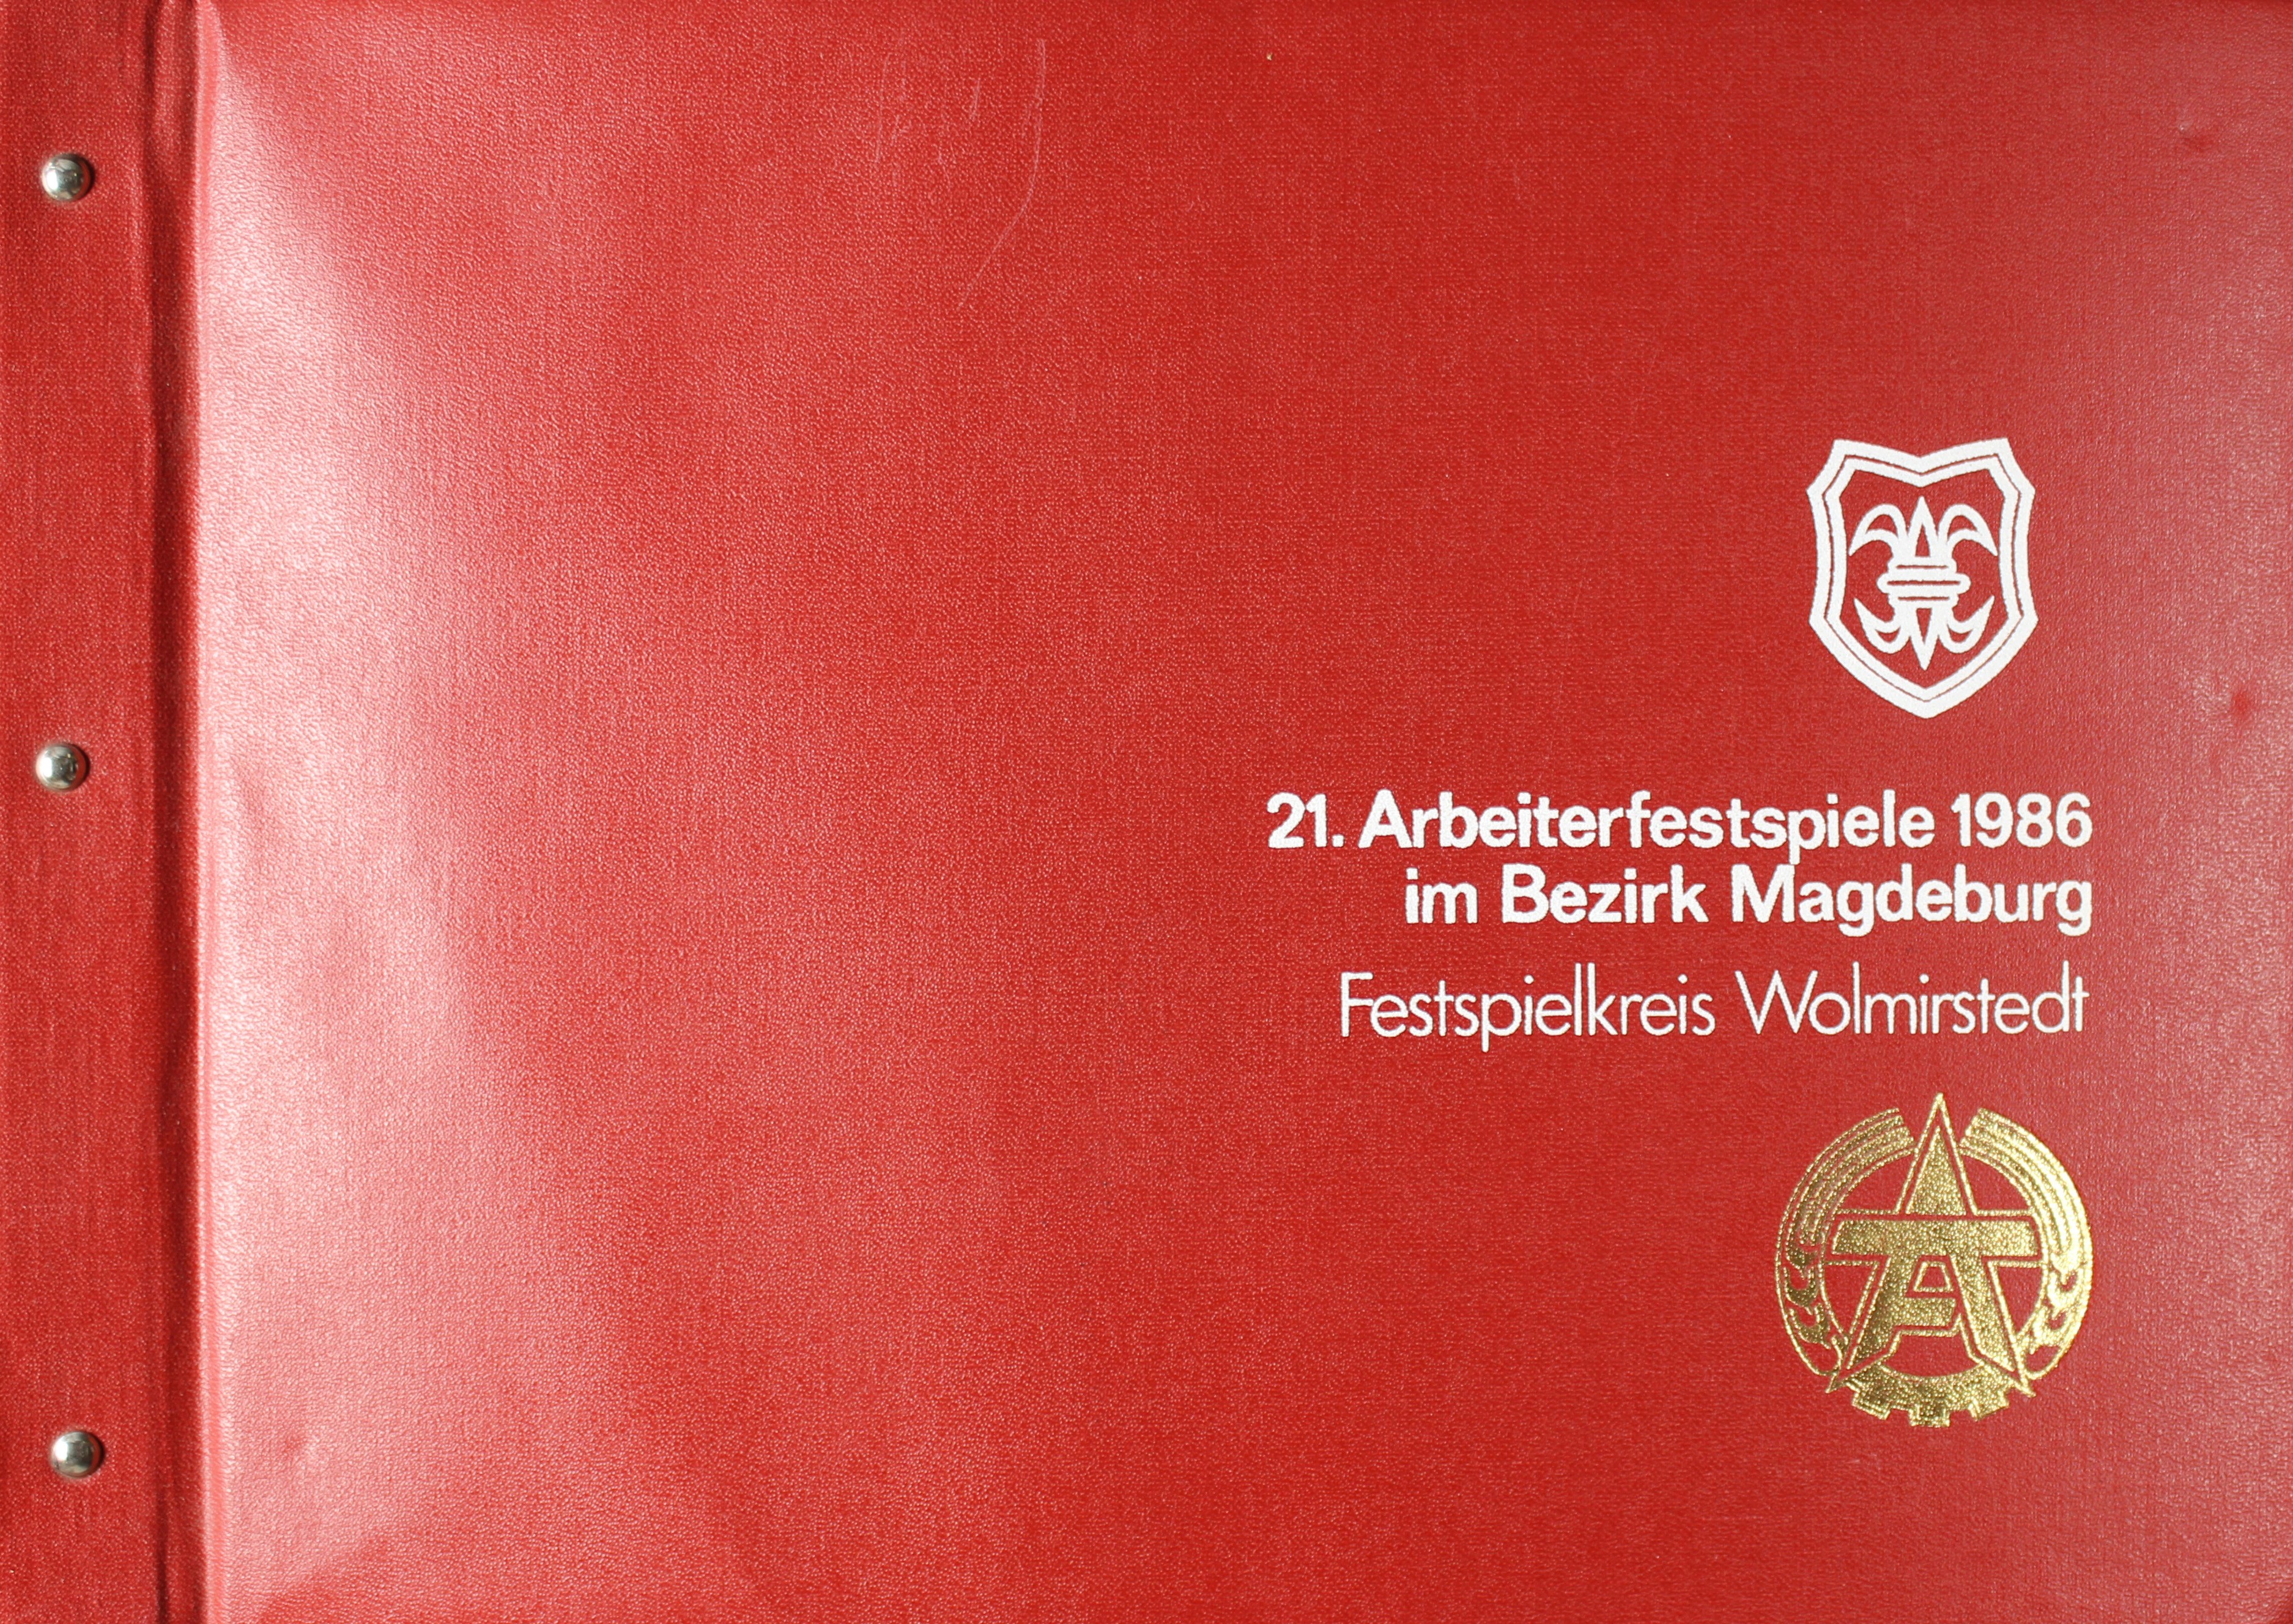 Fotoalbum zu den 21. Arbeiterfestspielen im Bezirk Magdeburg, Festspielkeis Wolmirstedt, 1986 (Museum Wolmirstedt RR-F)